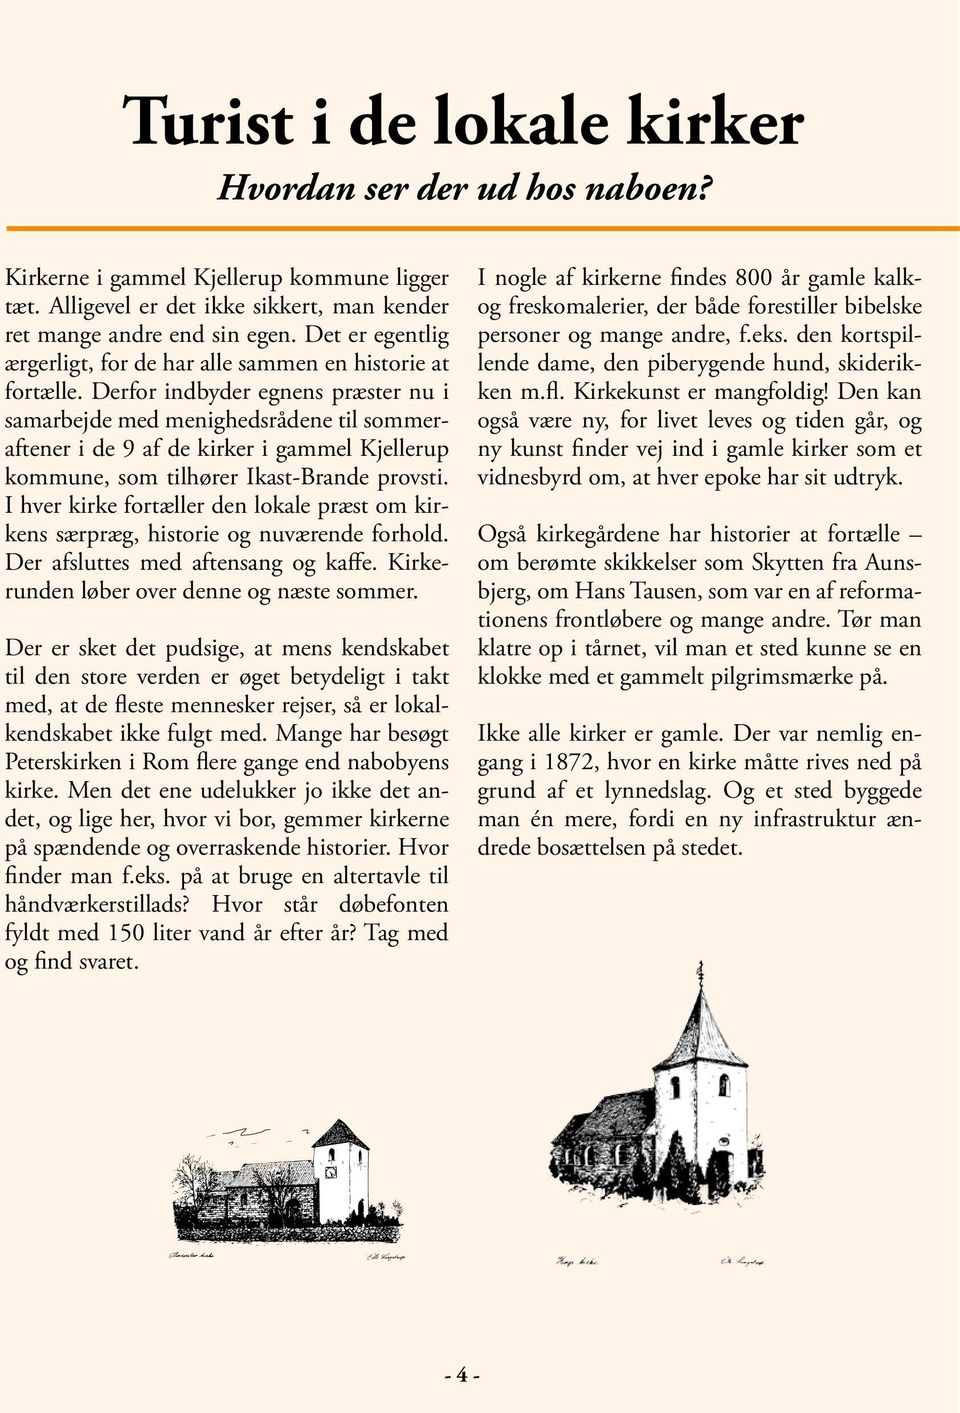 Derfor indbyder egnens præster nu i samarbejde med menighedsrådene til sommeraftener i de 9 af de kirker i gammel Kjellerup kommune, som tilhører Ikast-Brande provsti.